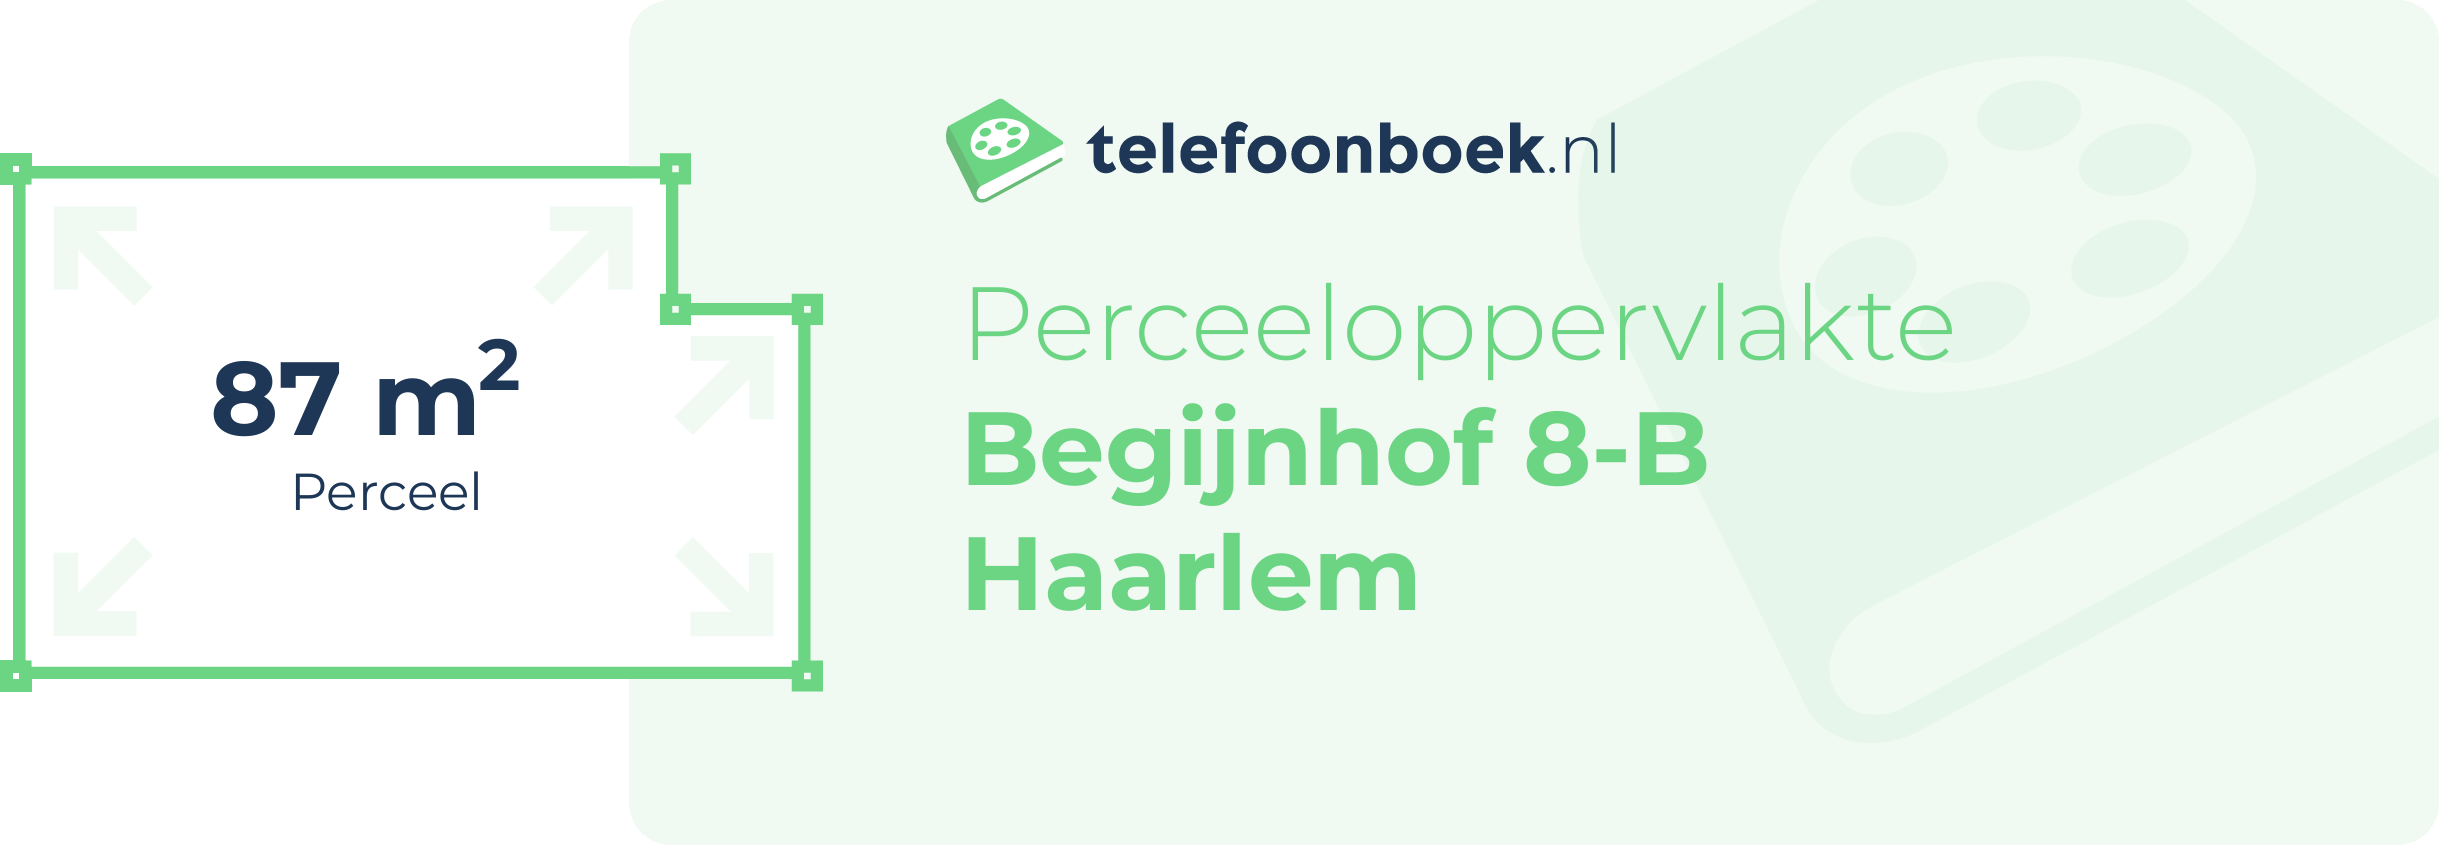 Perceeloppervlakte Begijnhof 8-B Haarlem